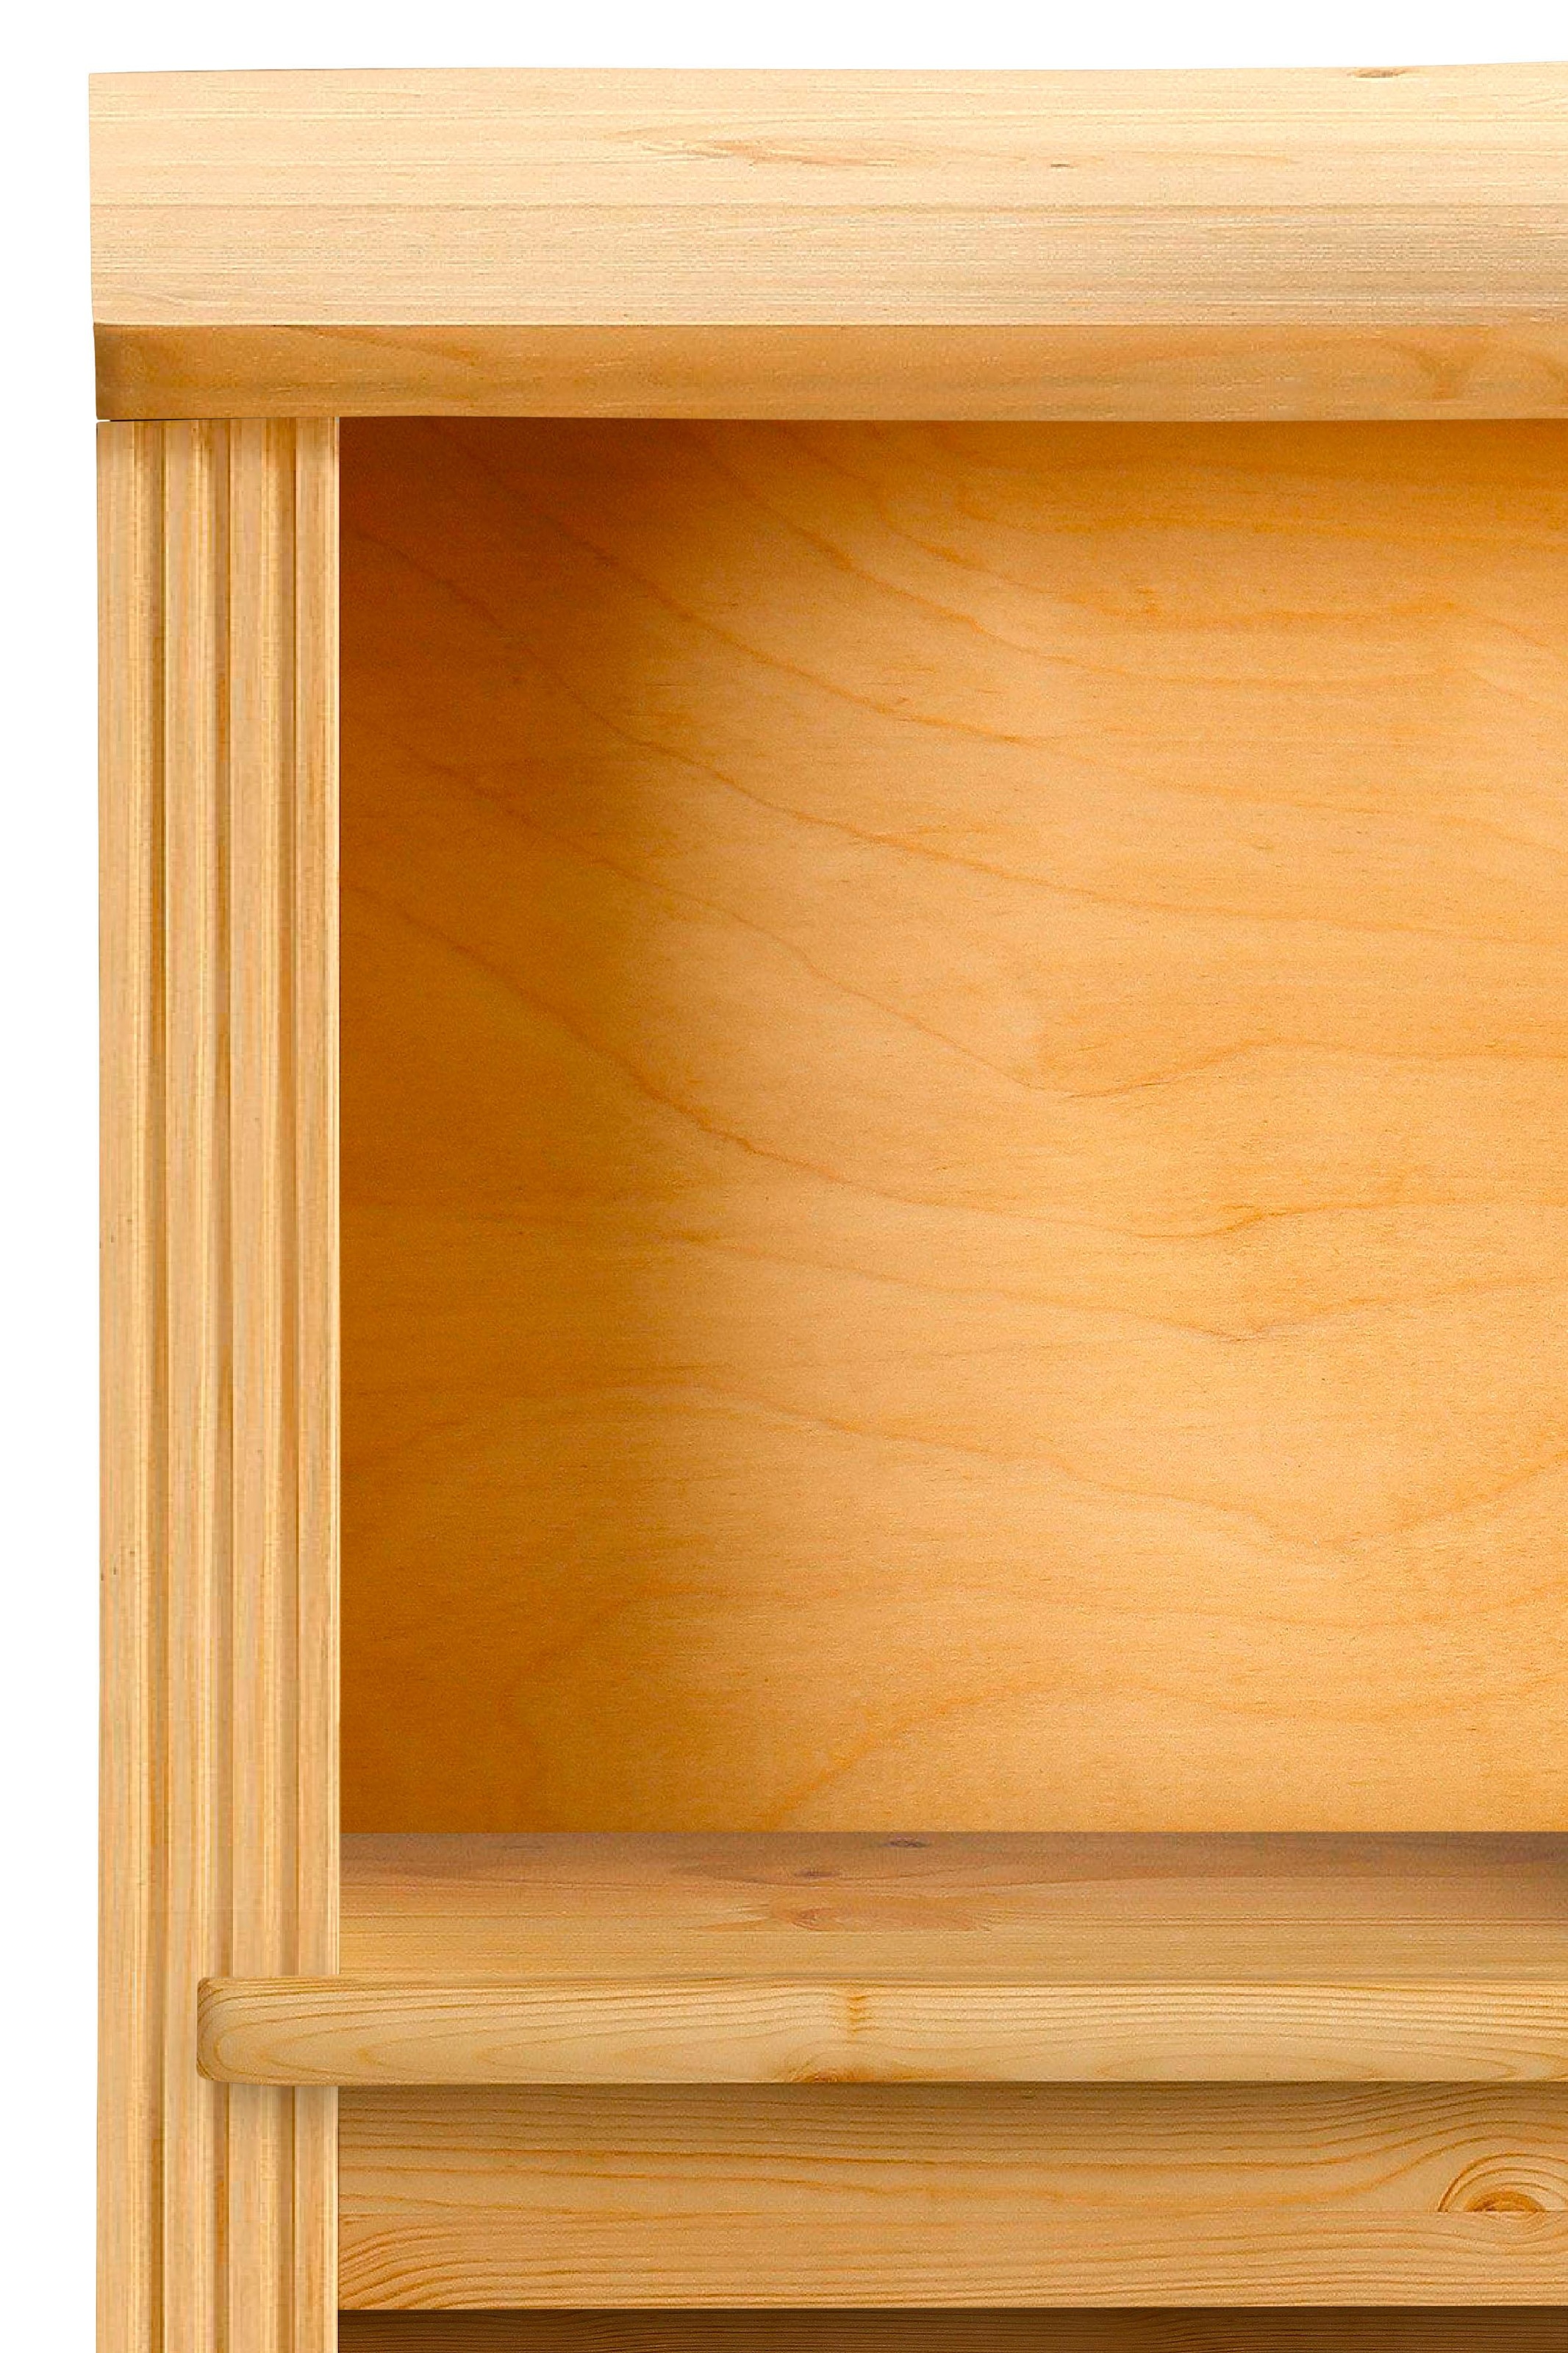 Home affaire Bücherregal »Soeren«, aus massiver Kiefer, Höhe 220 cm, mit 2 Holztüren, viel Stauraum